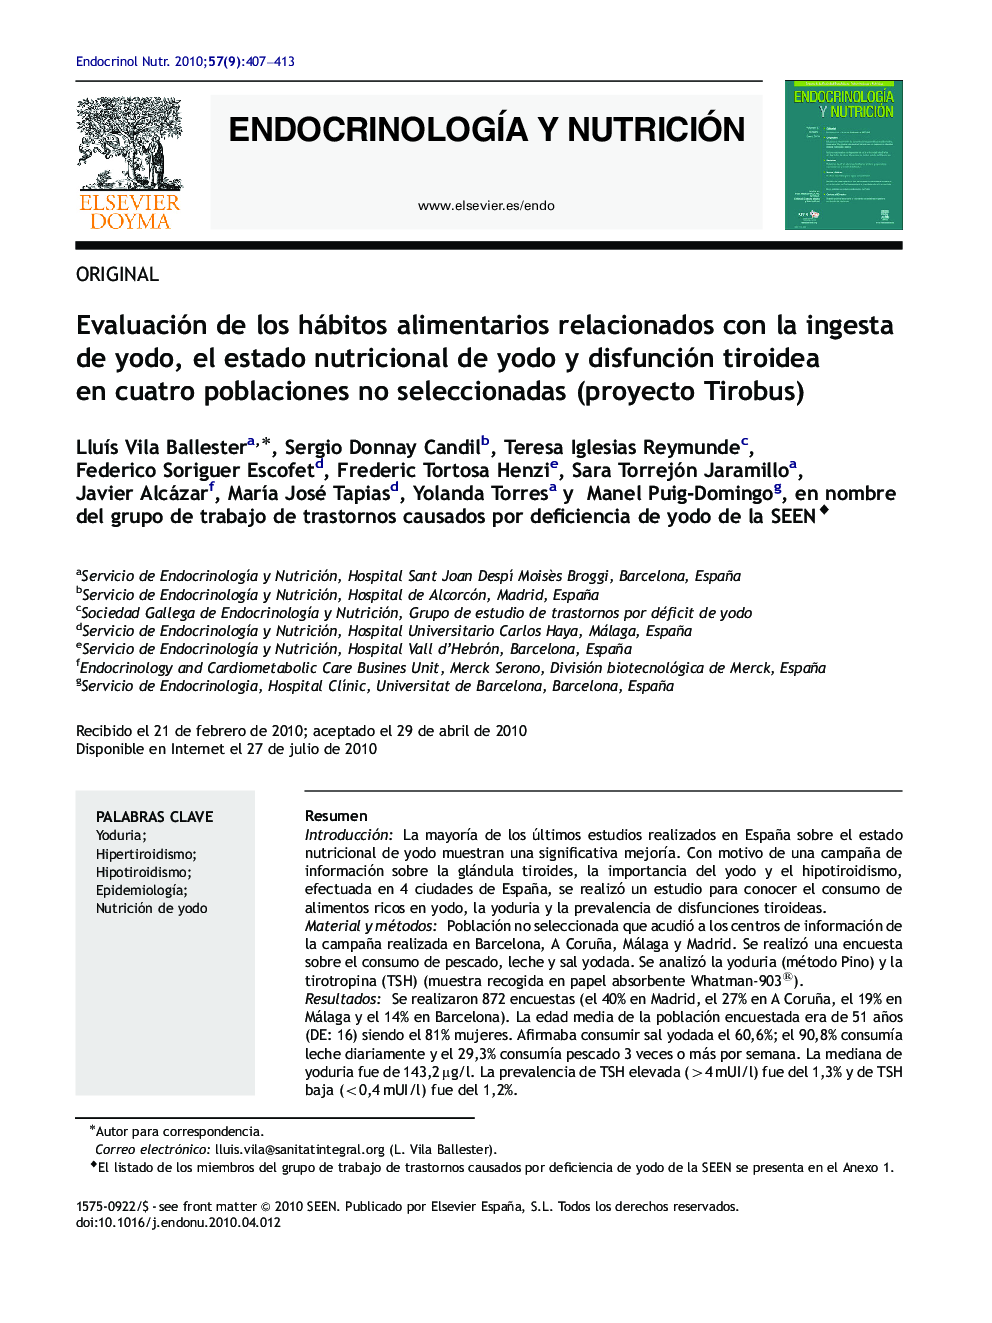 Evaluación de los hábitos alimentarios relacionados con la ingesta de yodo, el estado nutricional de yodo y disfunción tiroidea en cuatro poblaciones no seleccionadas (proyecto Tirobus)